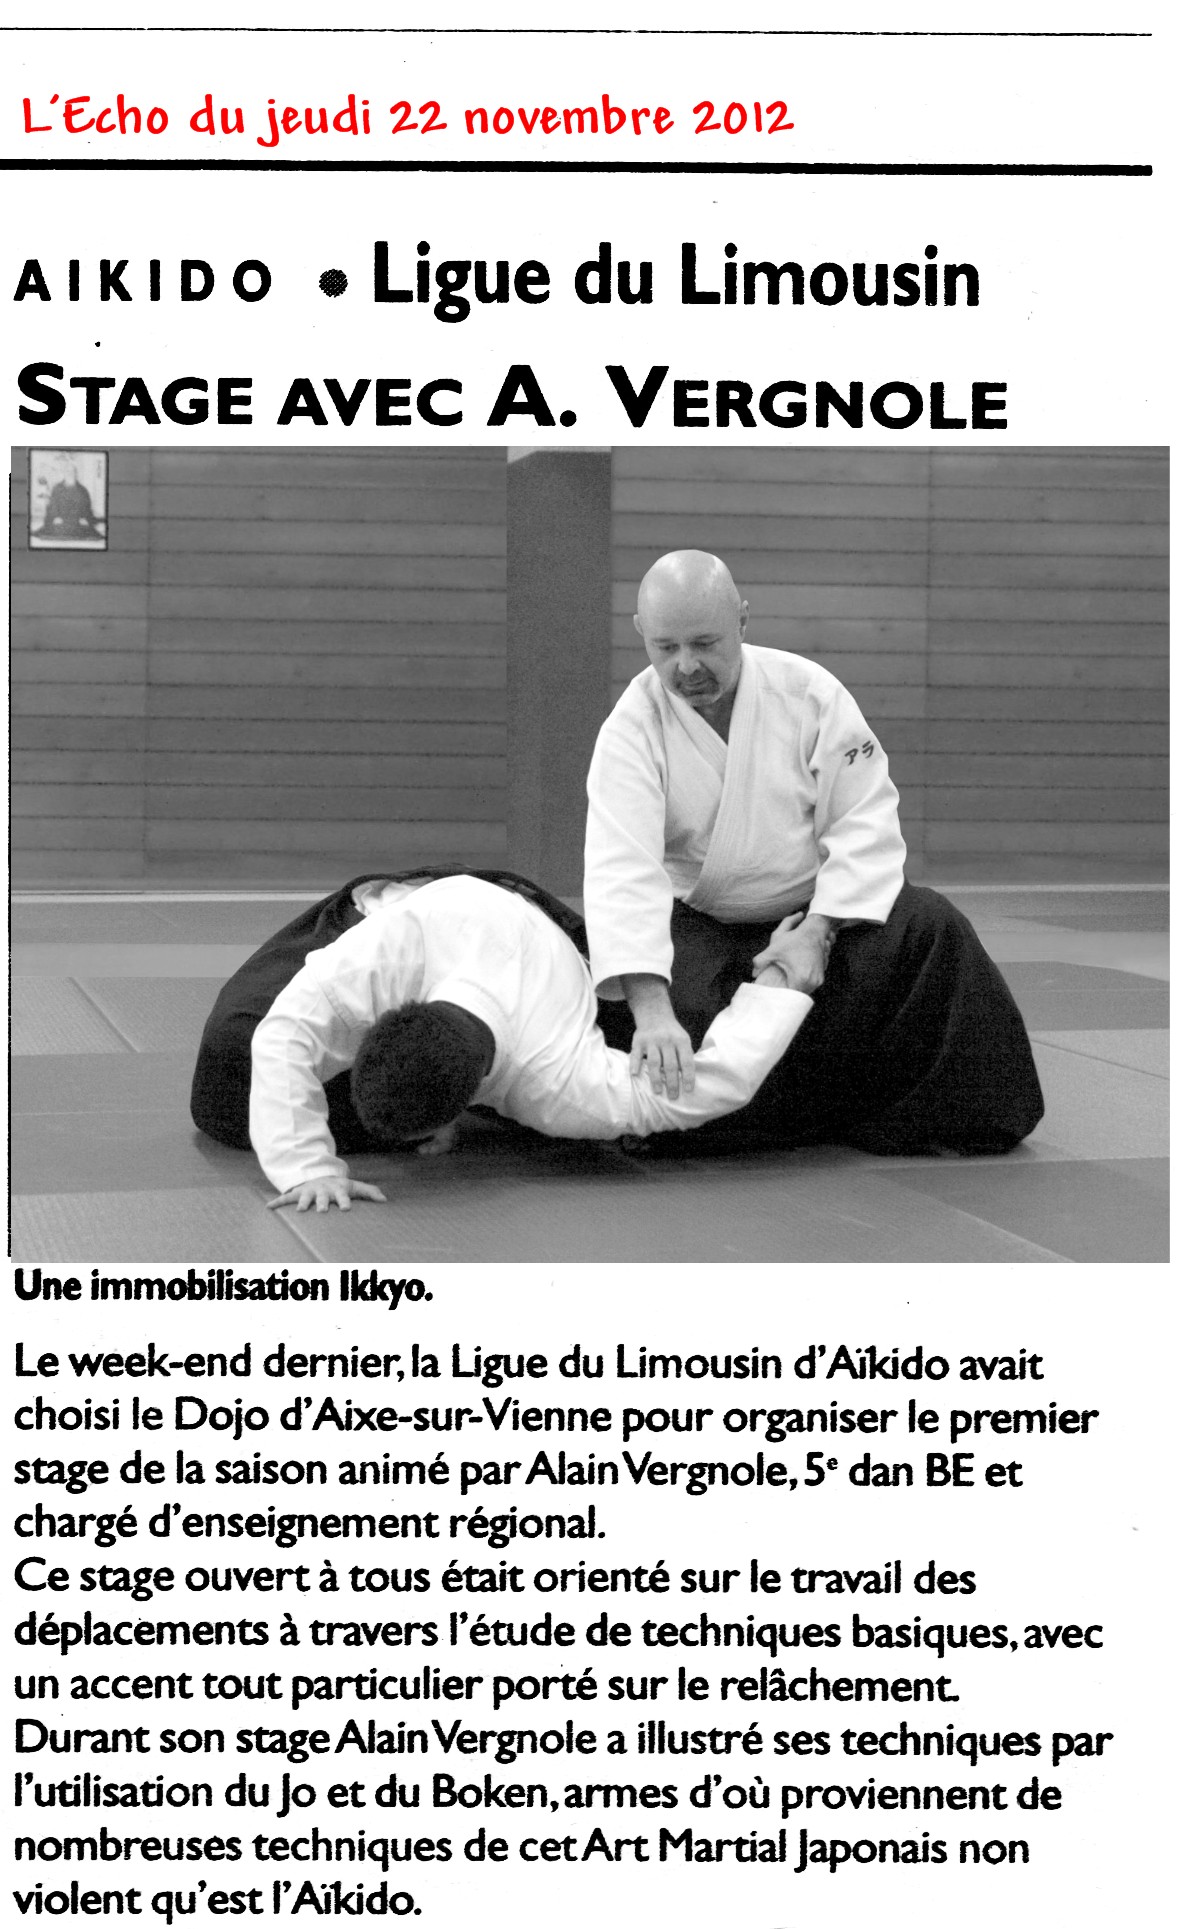 121122 Article de l'Echo Stage Aixe Alain Vergnole 001.jpg - 486,03 kB